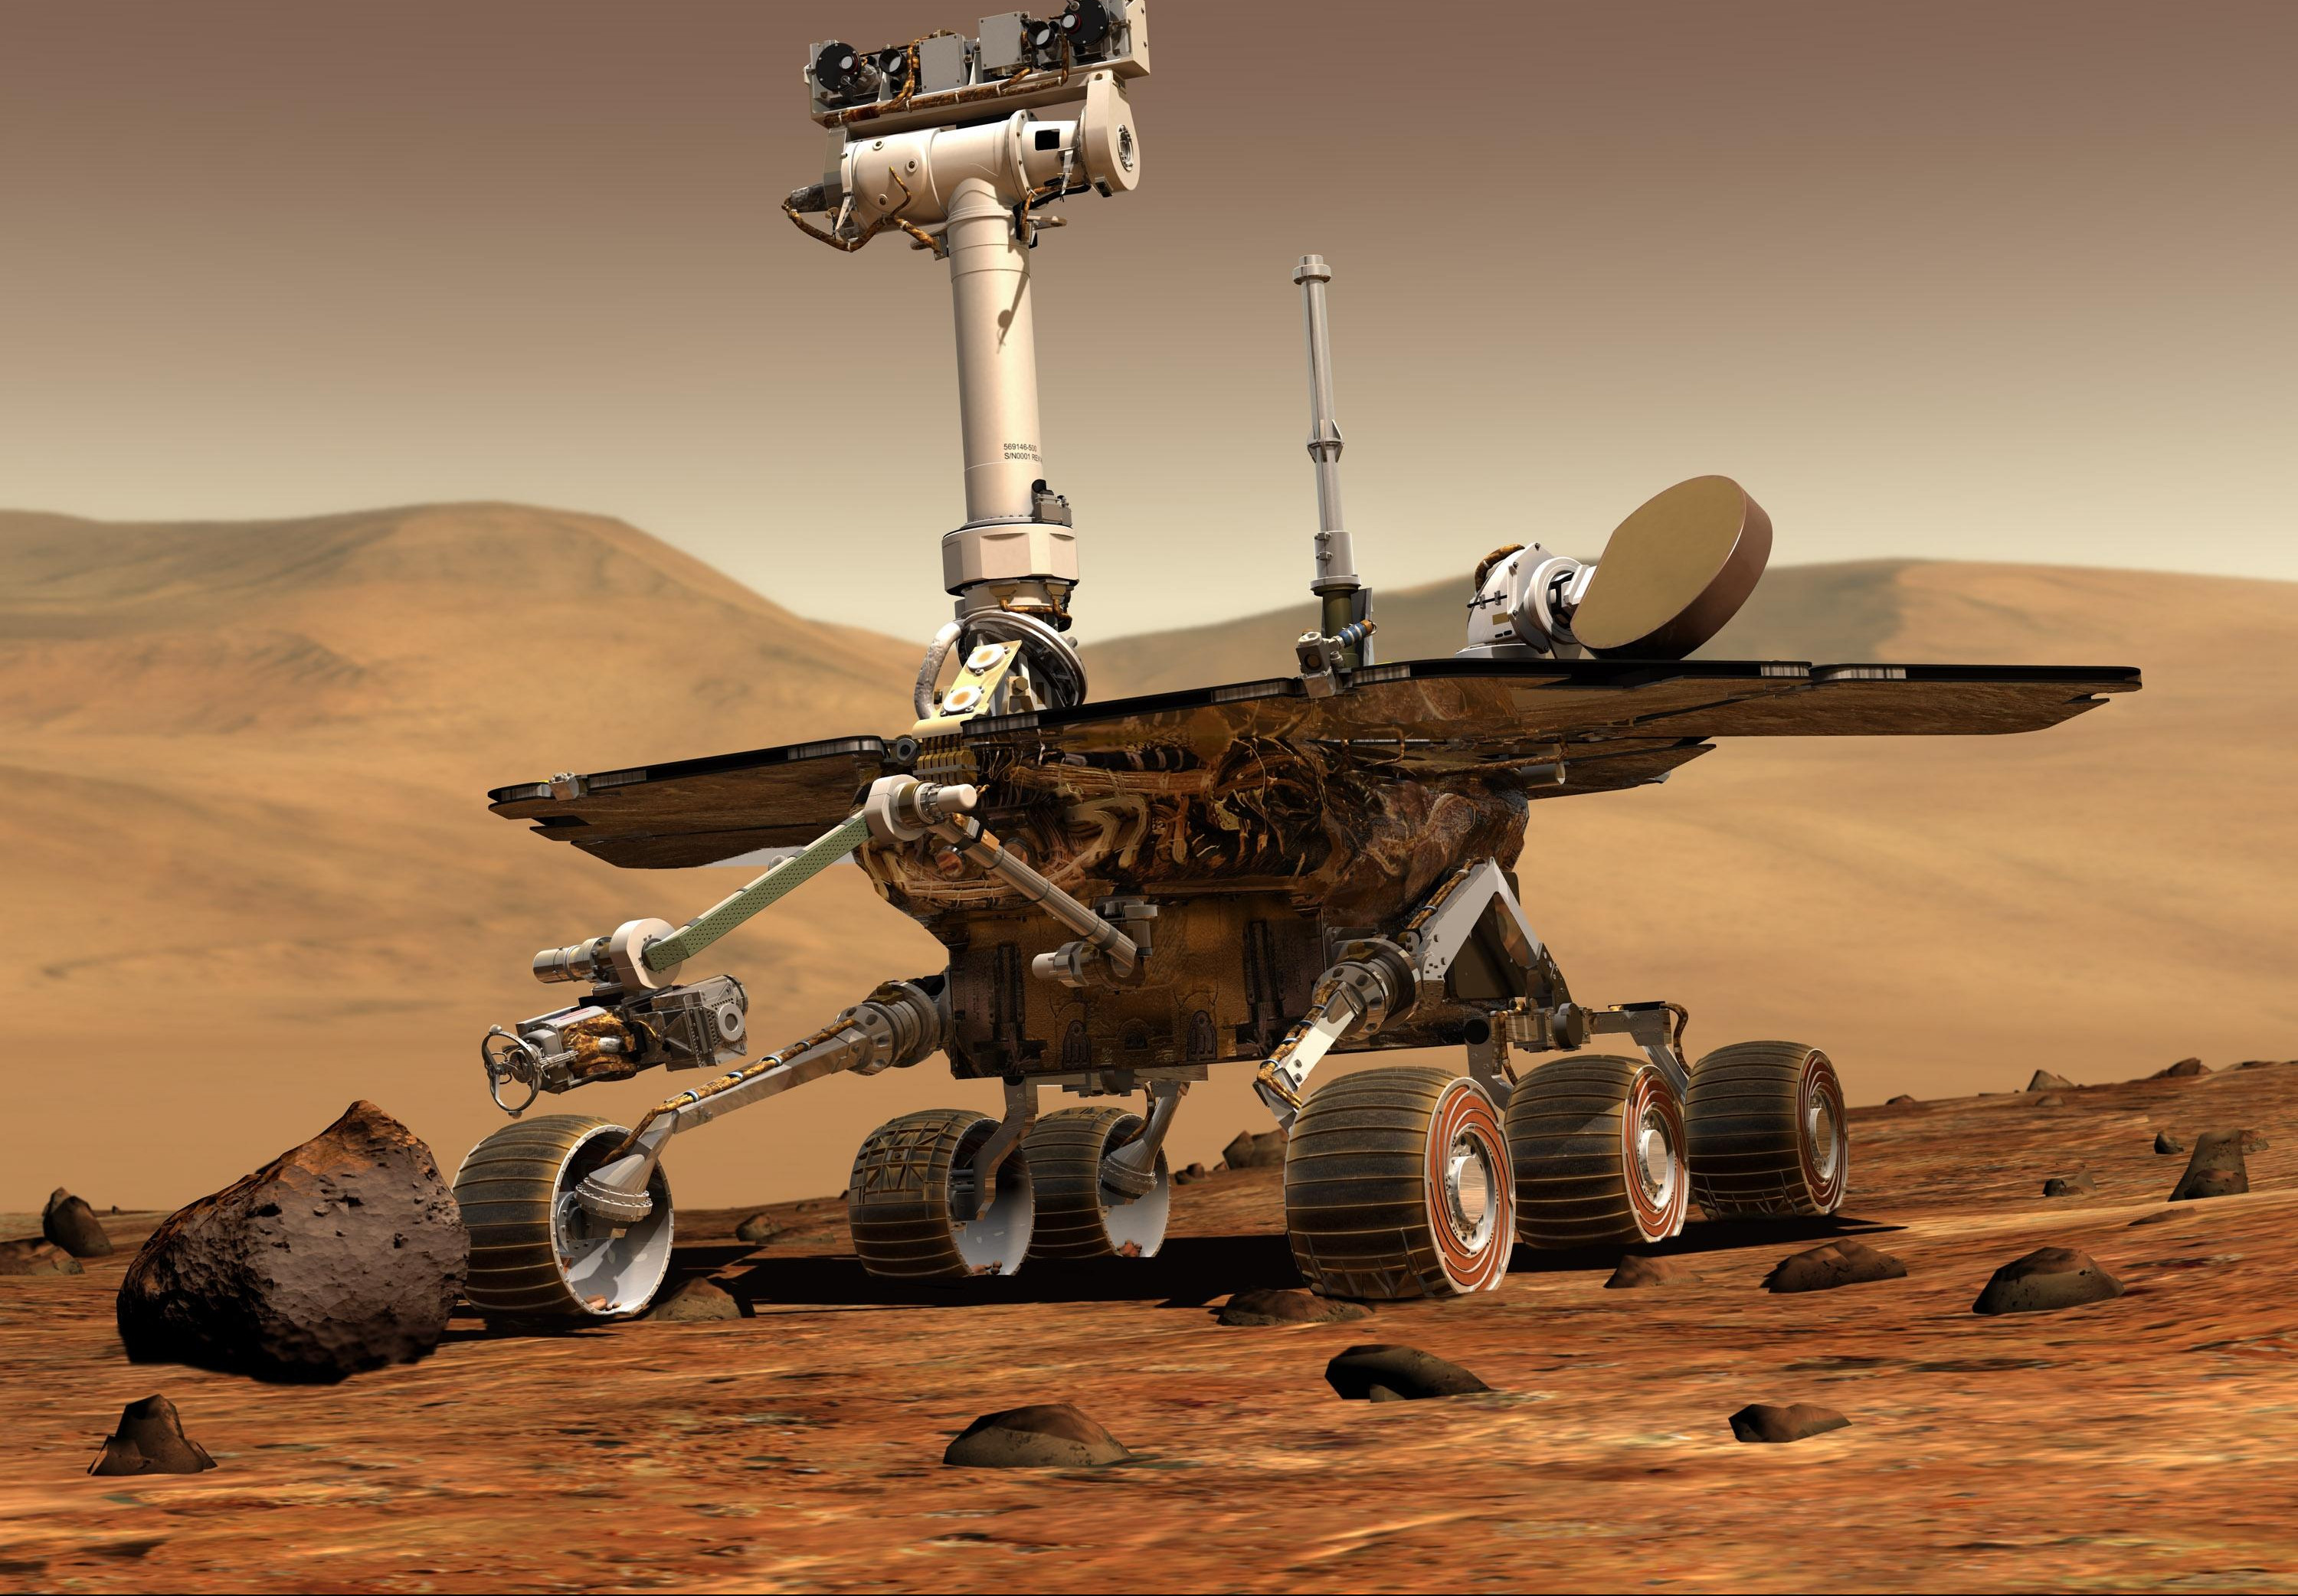 ŠOK OTKRIĆE! ŽIVOT NIJE NASTAO NA ZEMLJI, NEGO NA MARSU! Naučnici uzdrmali svet, Mars je ustvari "manja, starija Zemlja" koja je "sagorela" svoje prirodne resurse...